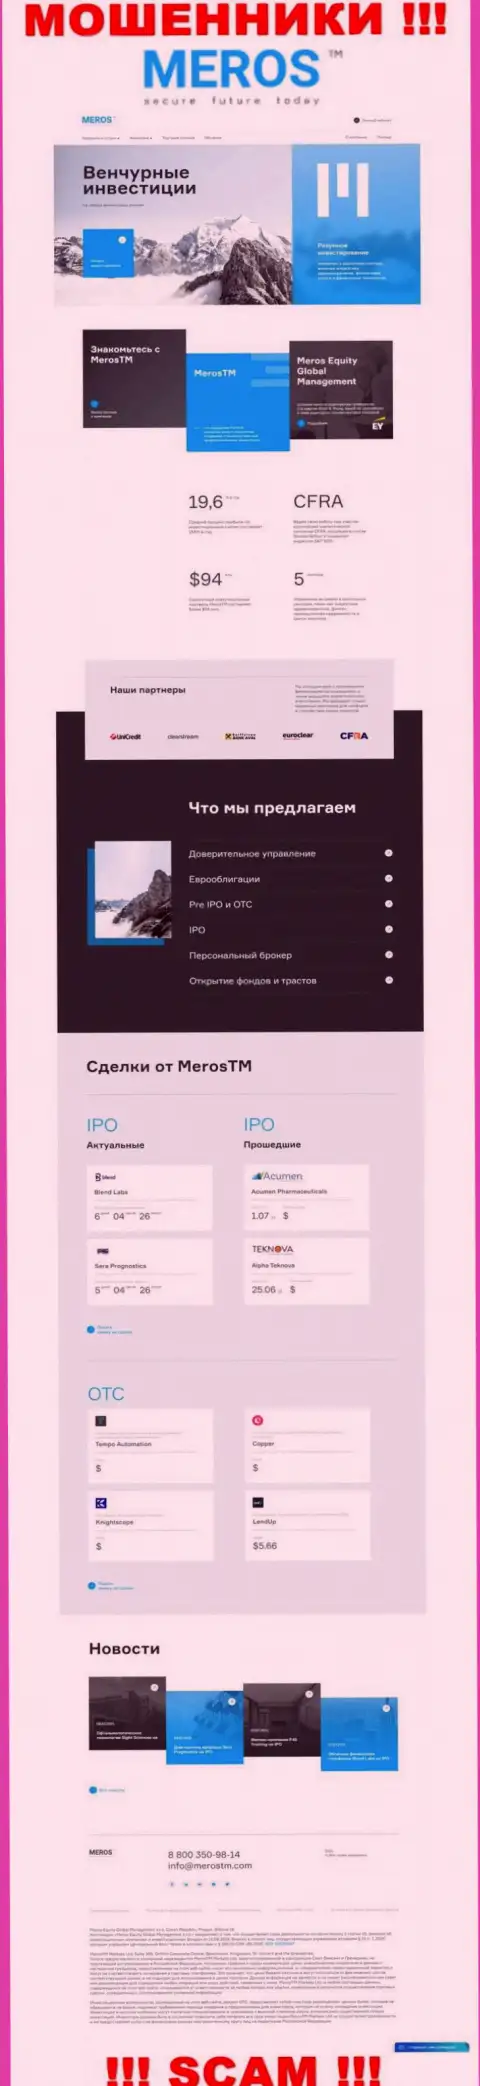 Обзор официального веб-сервиса шулеров МеросТМ